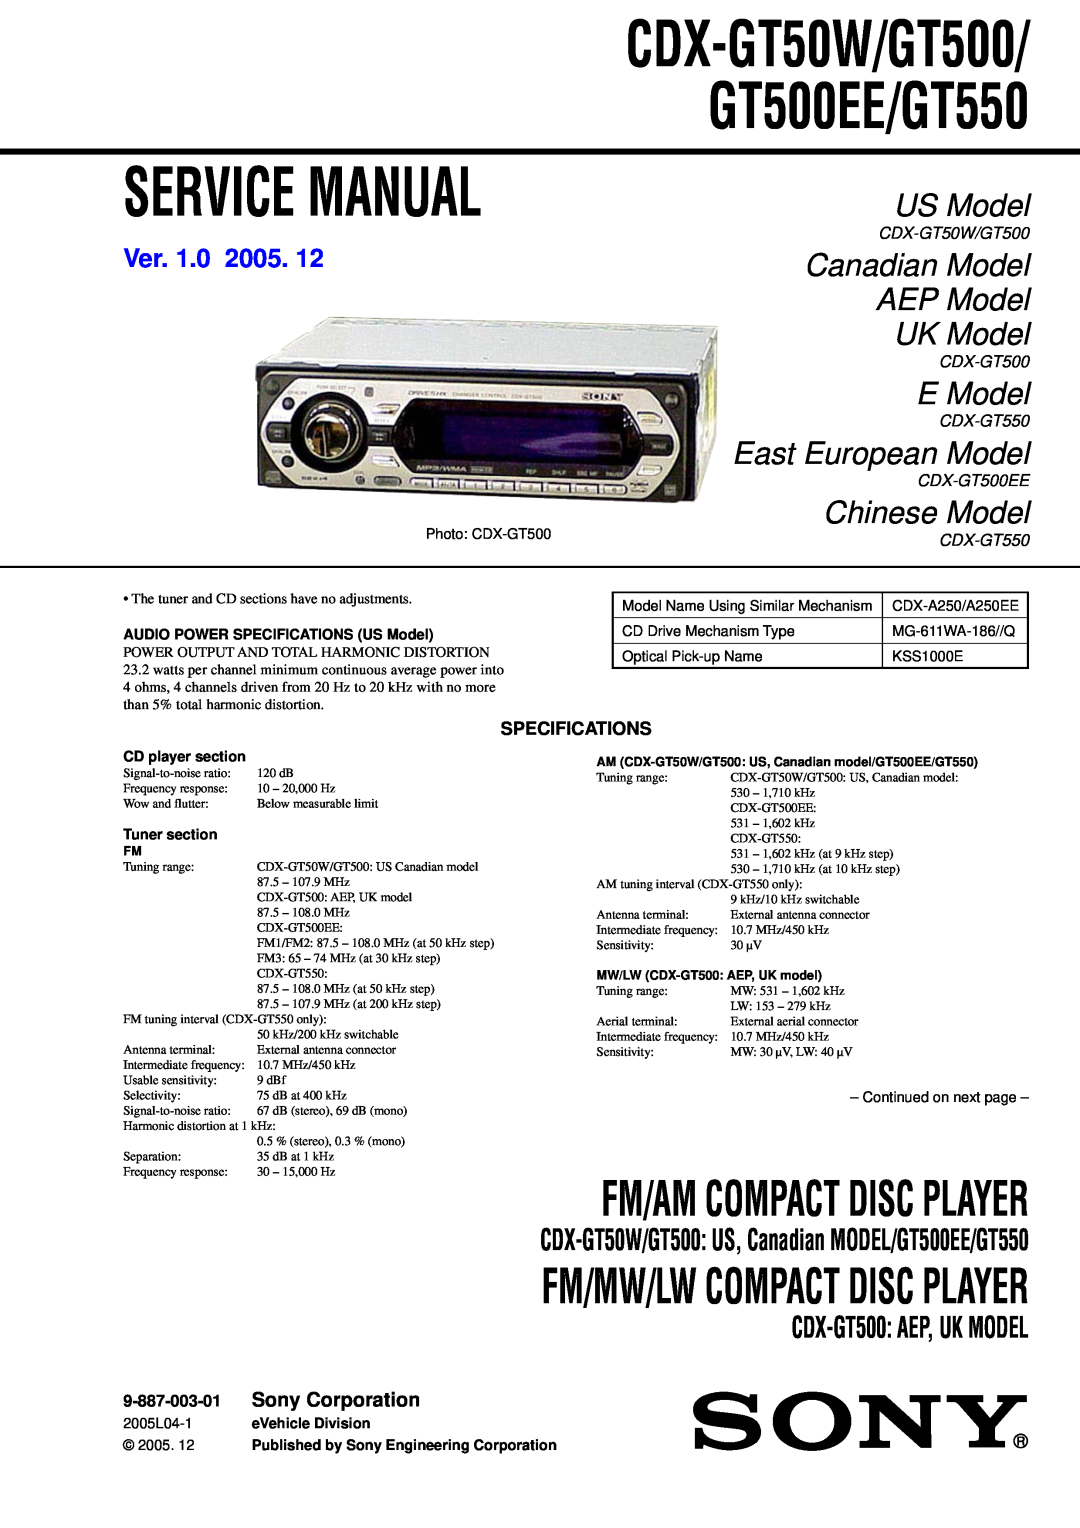 Sony CDX-GT500 service manual Specifications, CDX-GT50W/GT500/GT500EE/GT550, US Model, Canadian Model AEP Model UK Model 